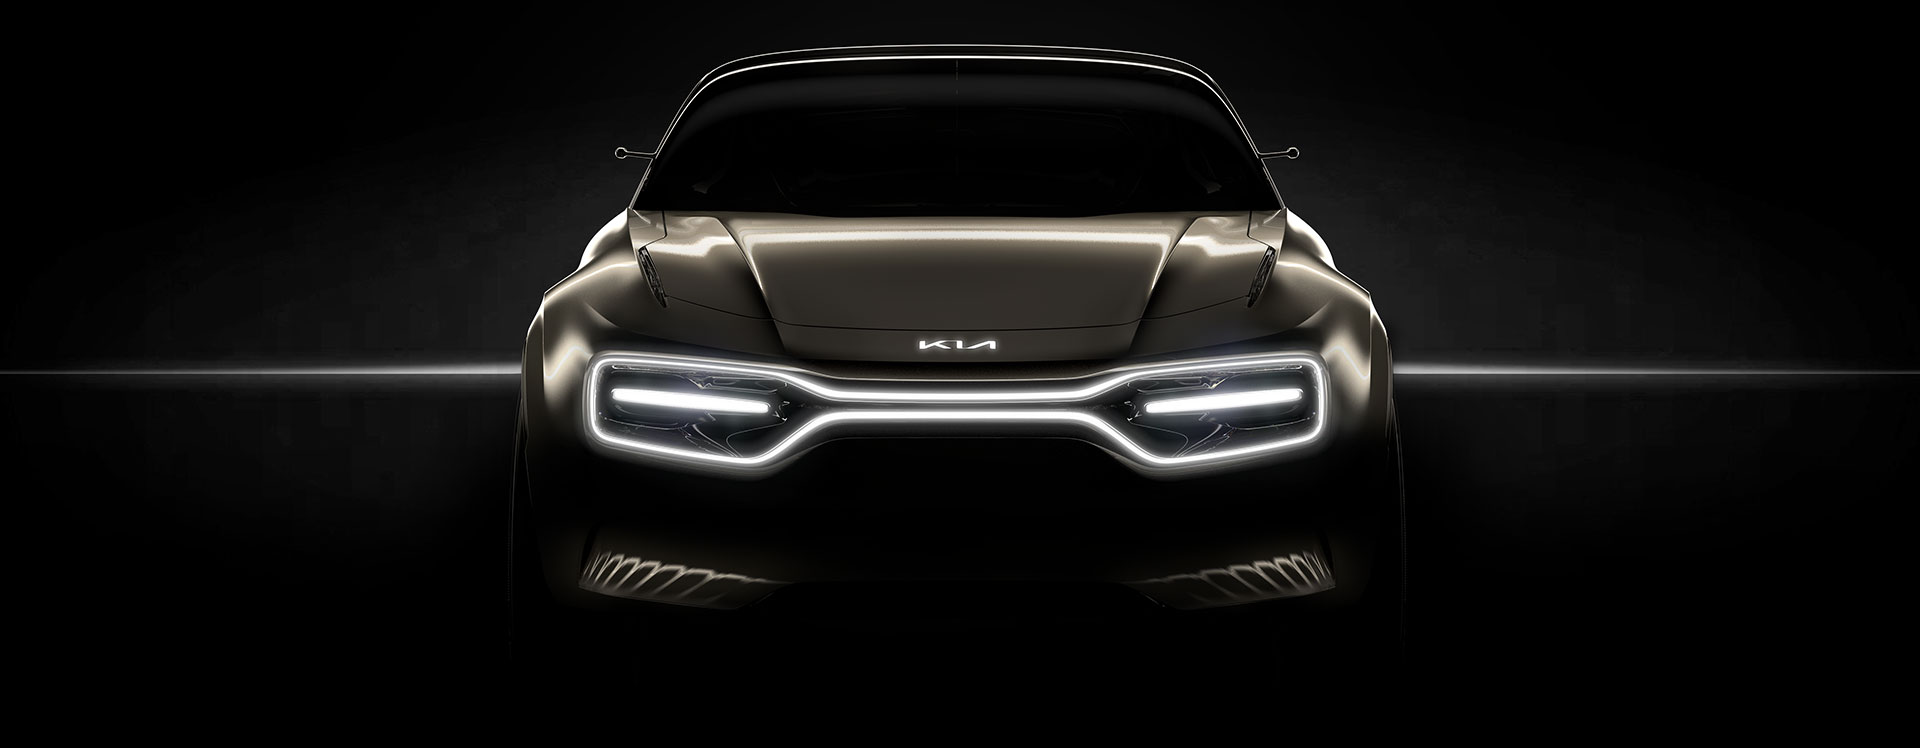 Kia to electrify with concept car